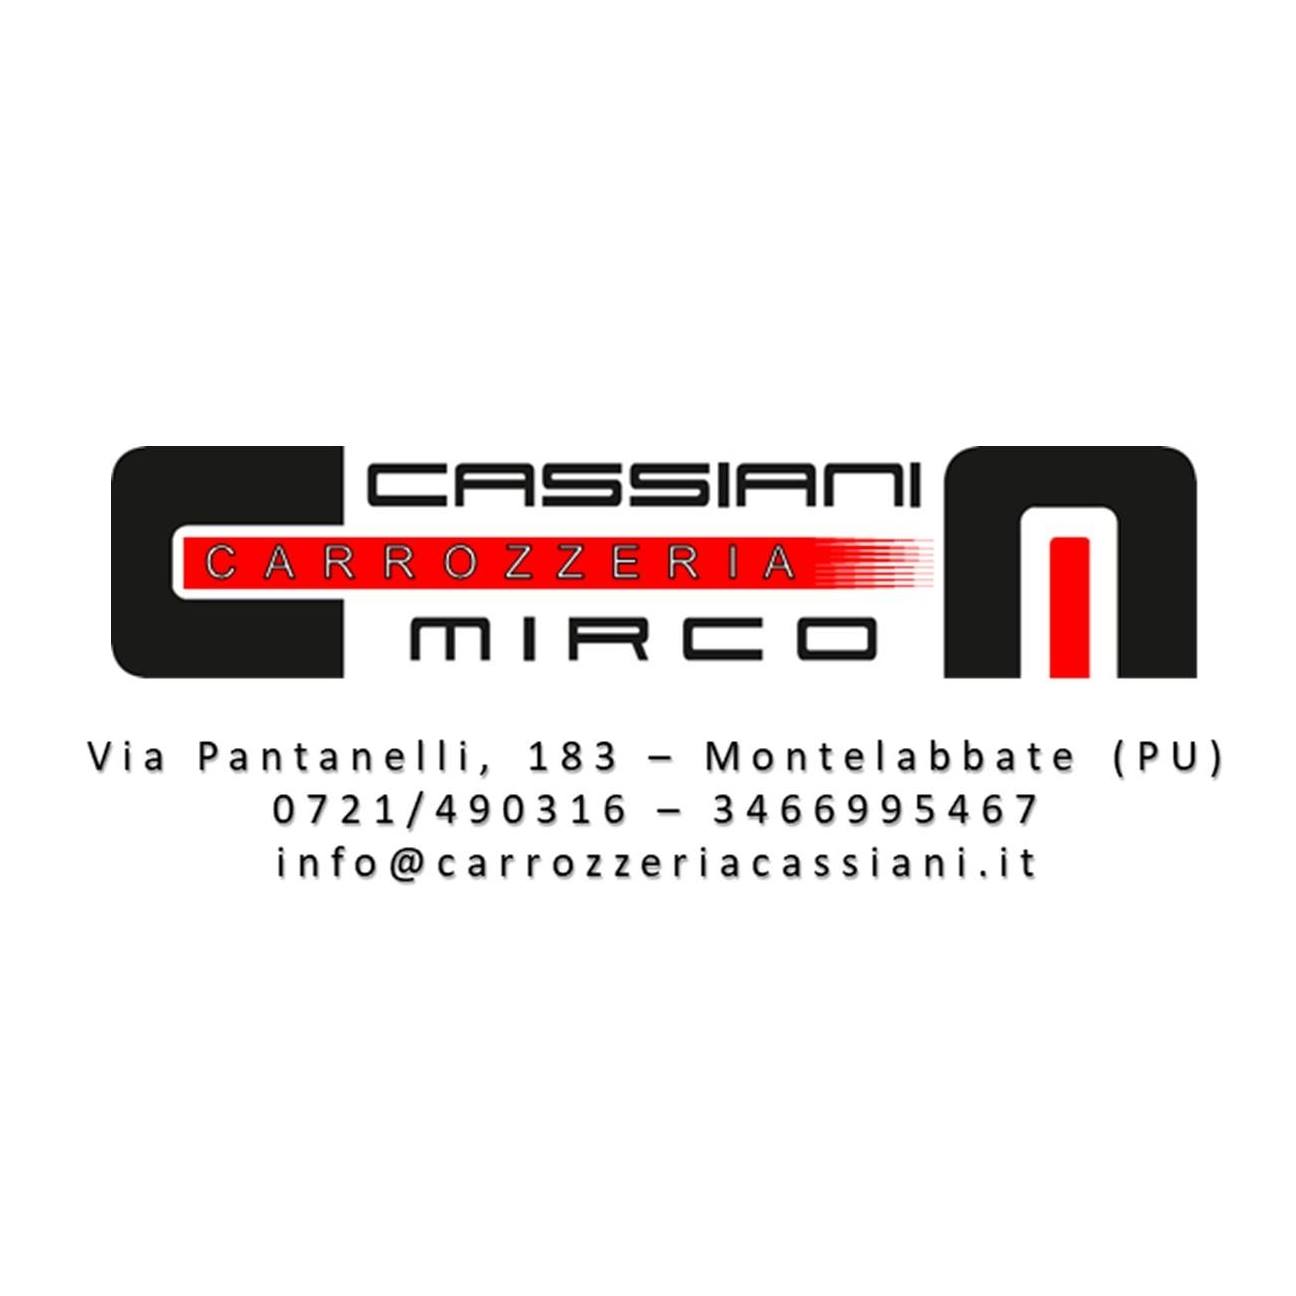 CarrozzerIa Cassiani